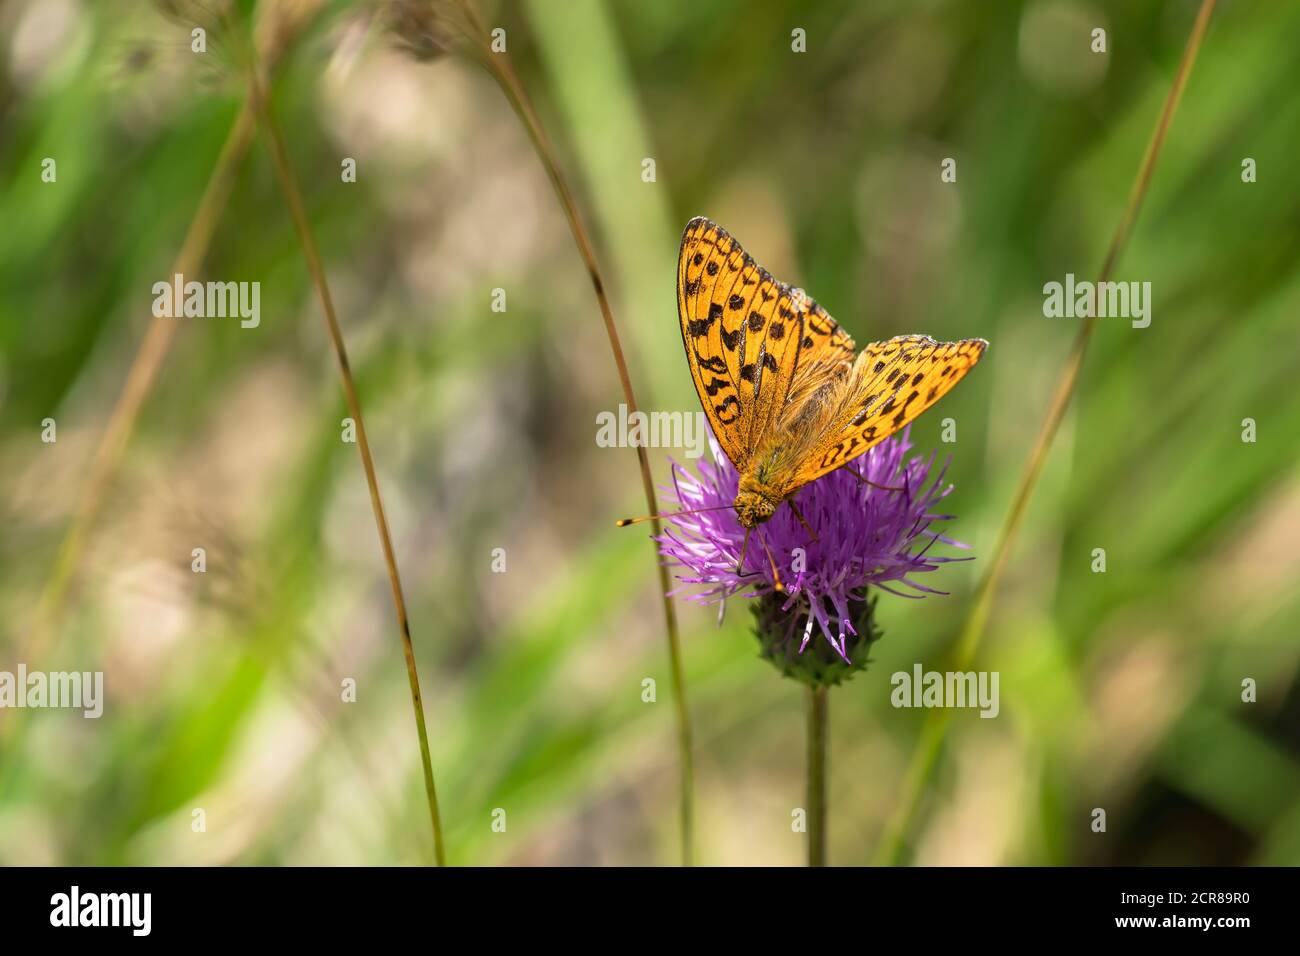 Grand papillon nacre, aglaja Argynberg, papillon, insecte, Alb souabe, Baden-Wuertnis, Allemagne, Europe Banque D'Images